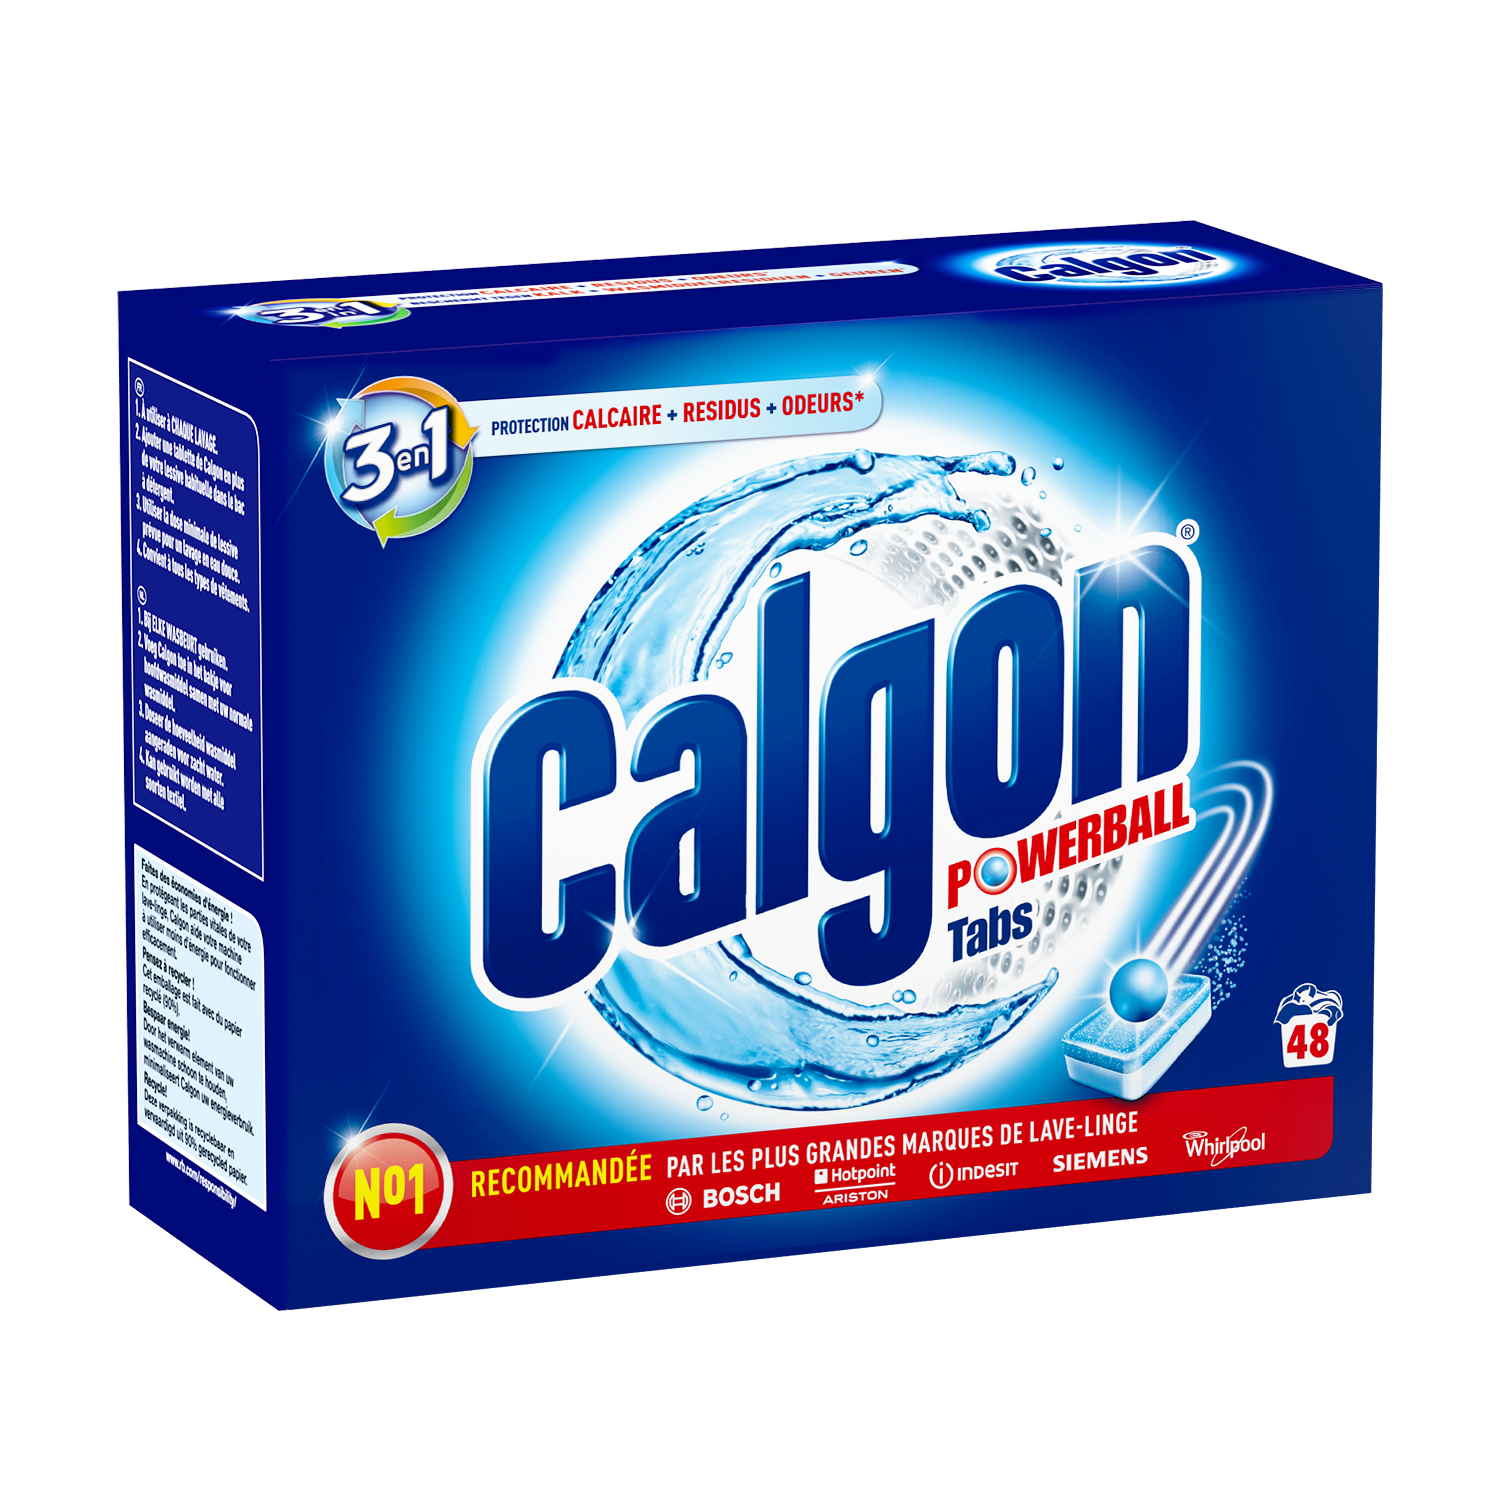 Calgon protège le lave-linge du calcaire au quotidien